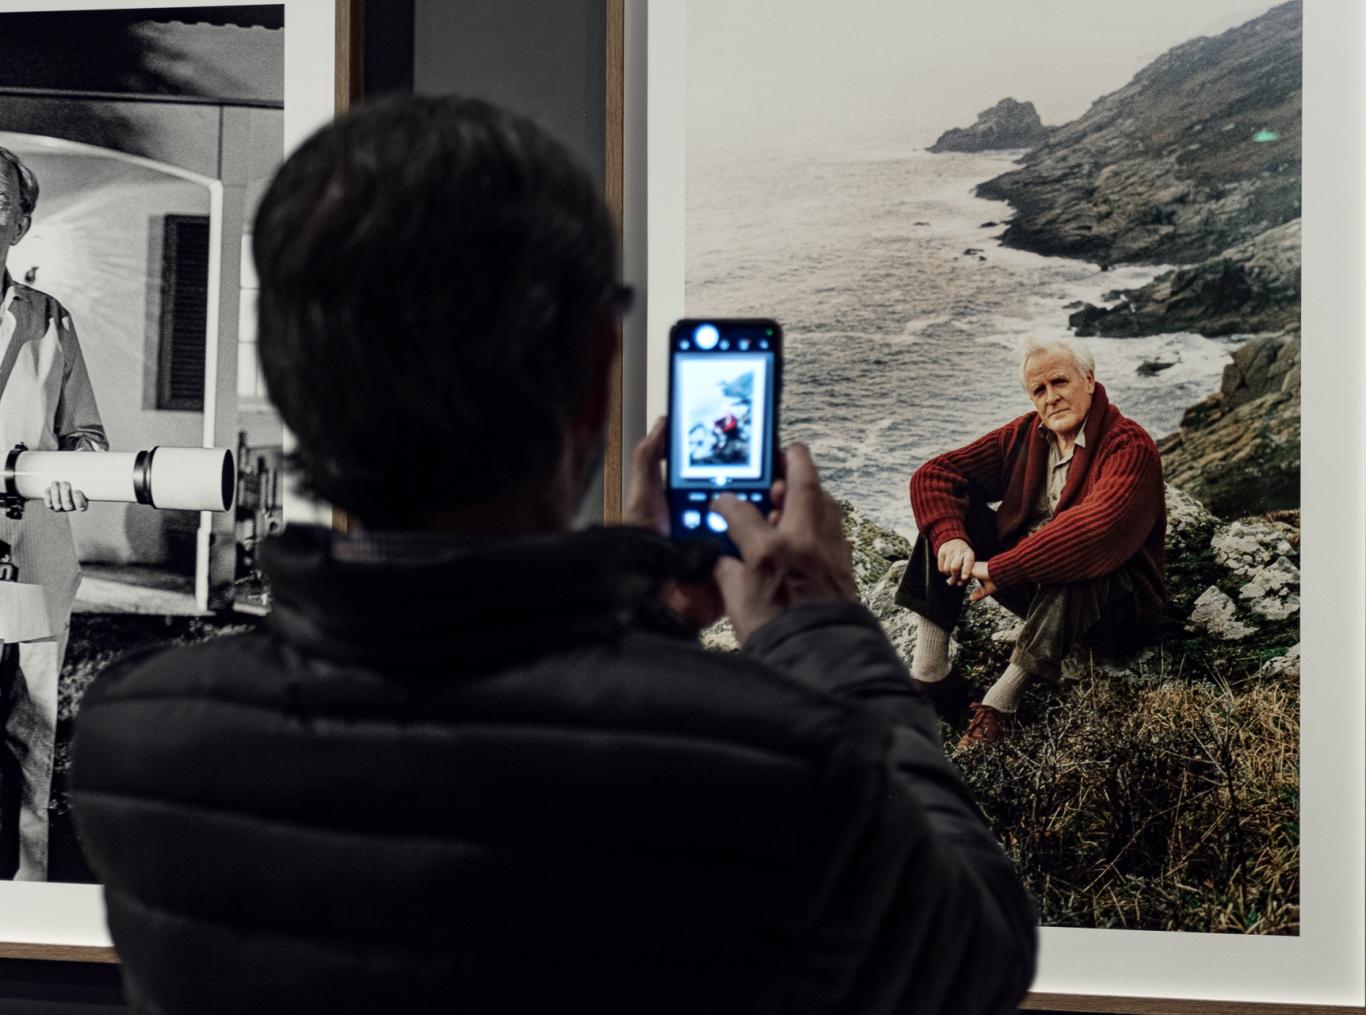 Una persona haciéndole una fotografía a una fotografía en una sala de exposiciones